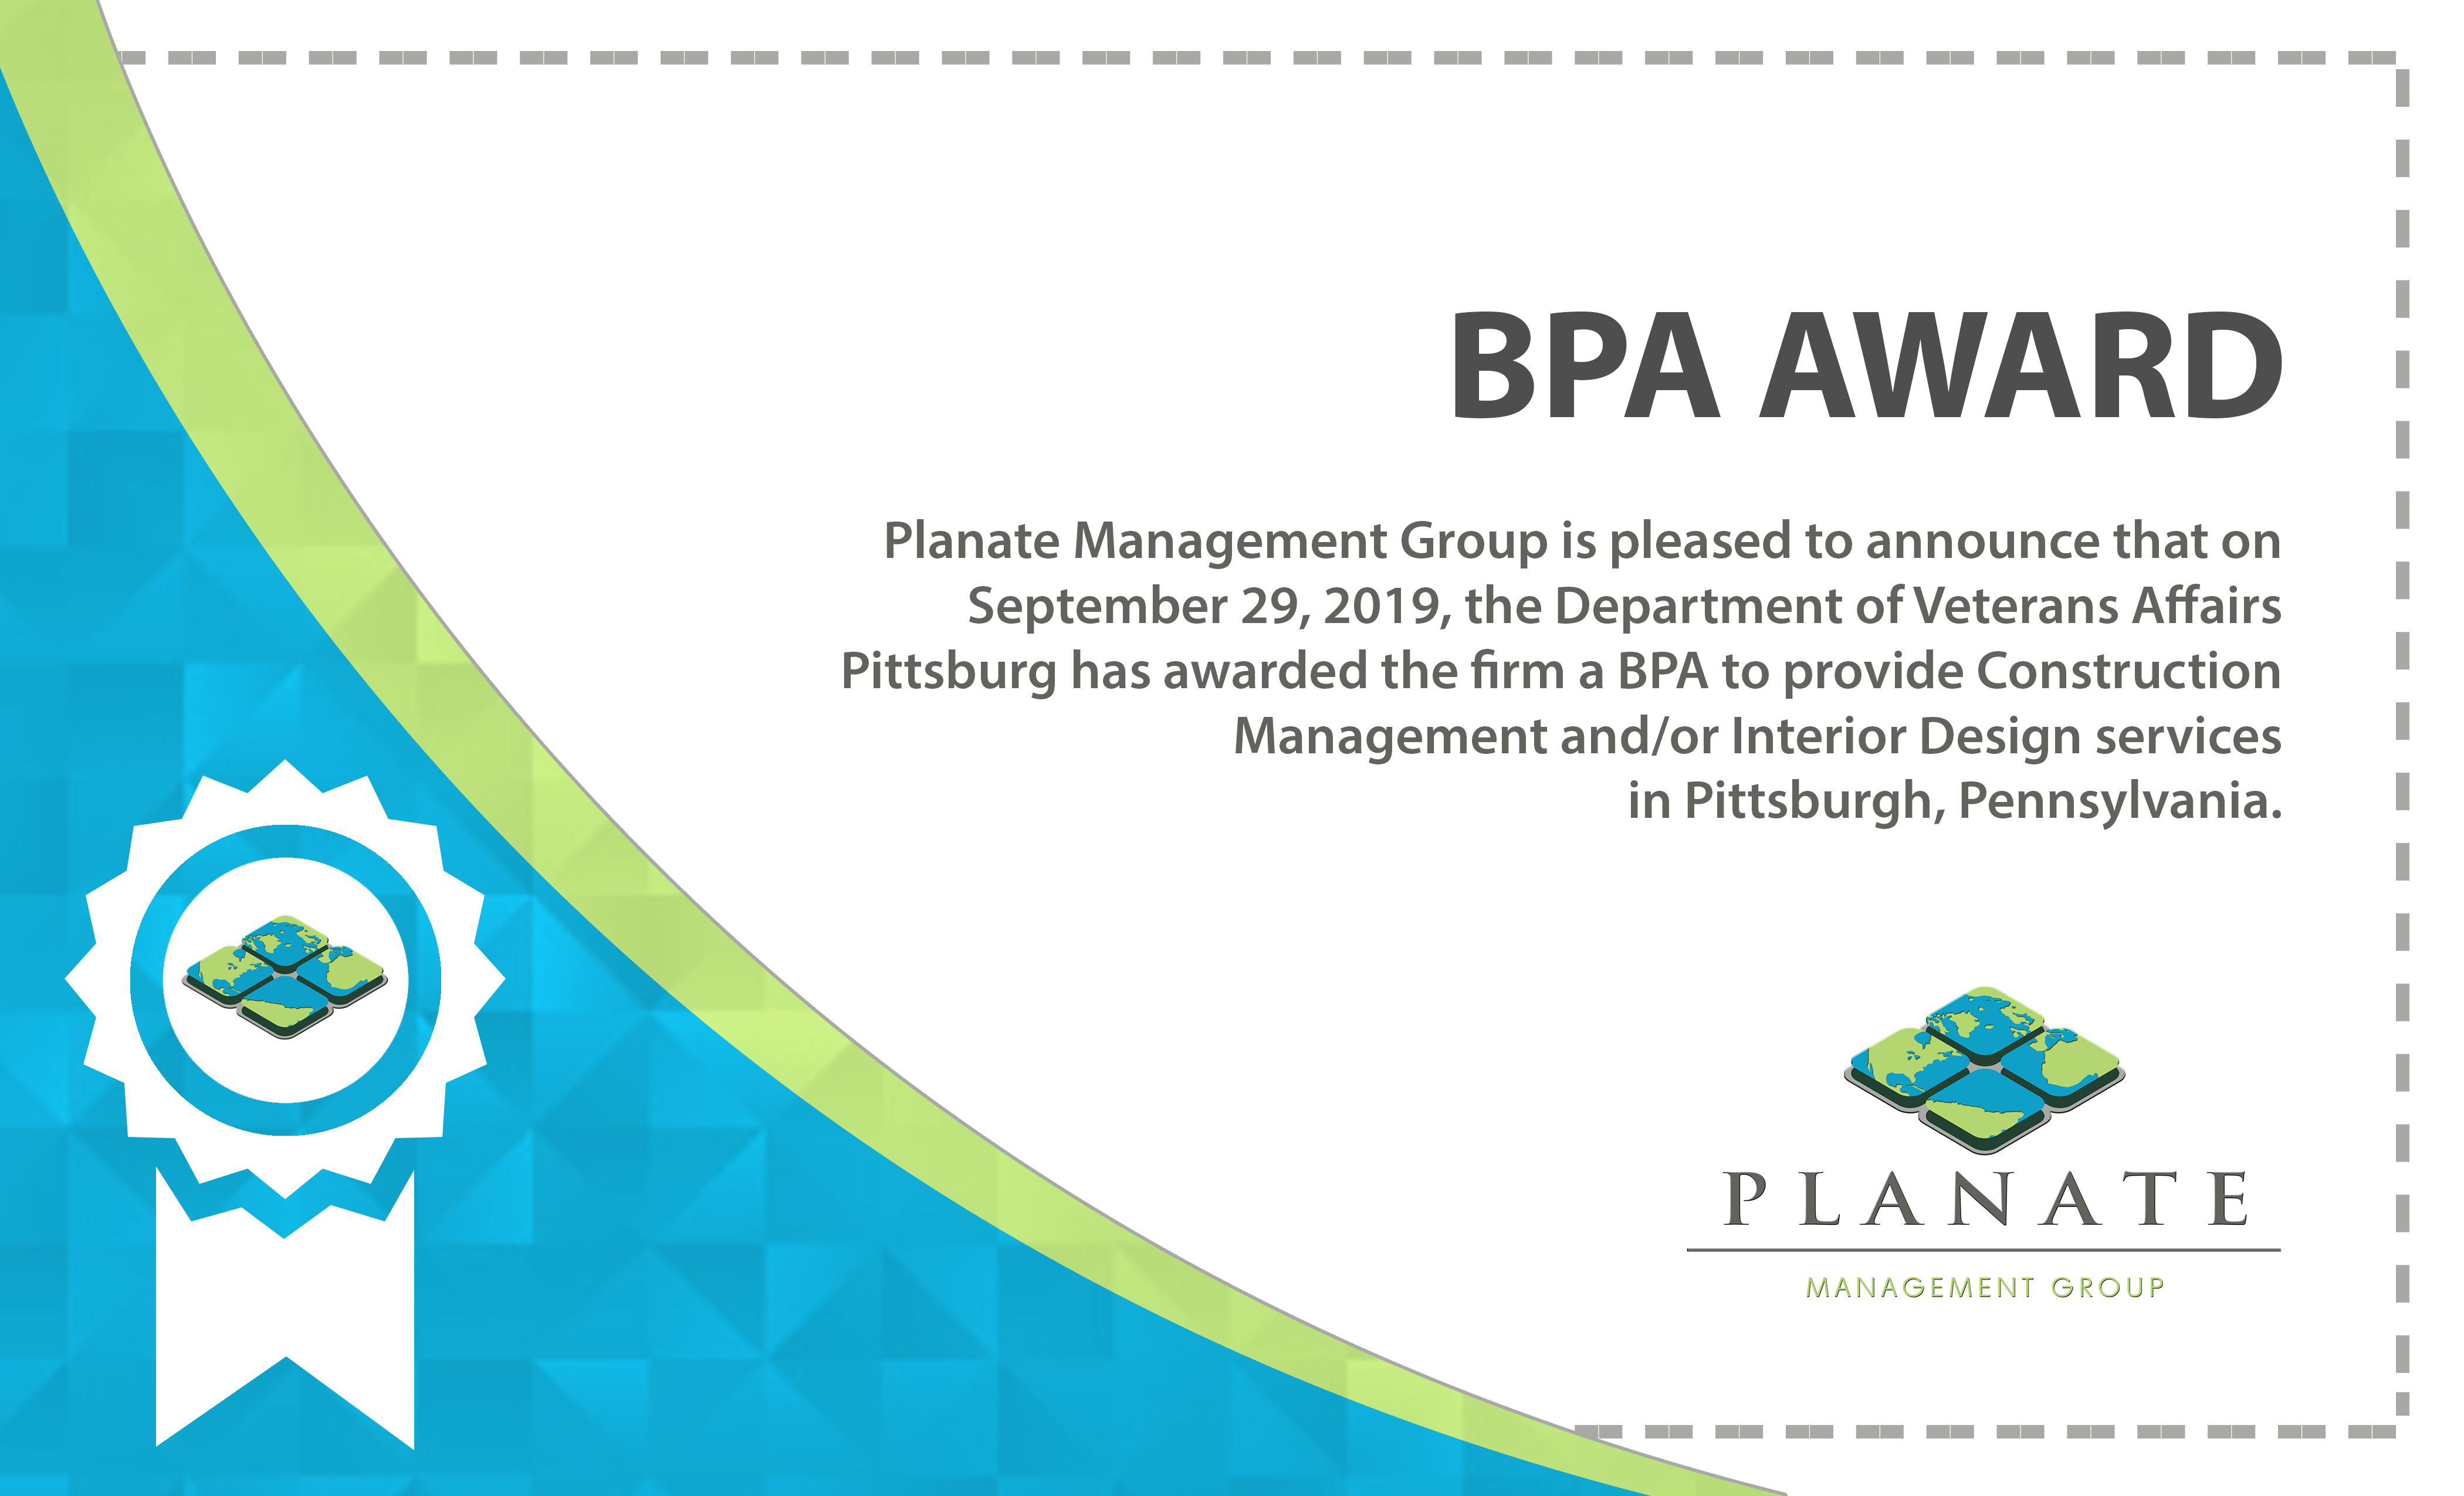 BPA Award 10.21.19 Planate